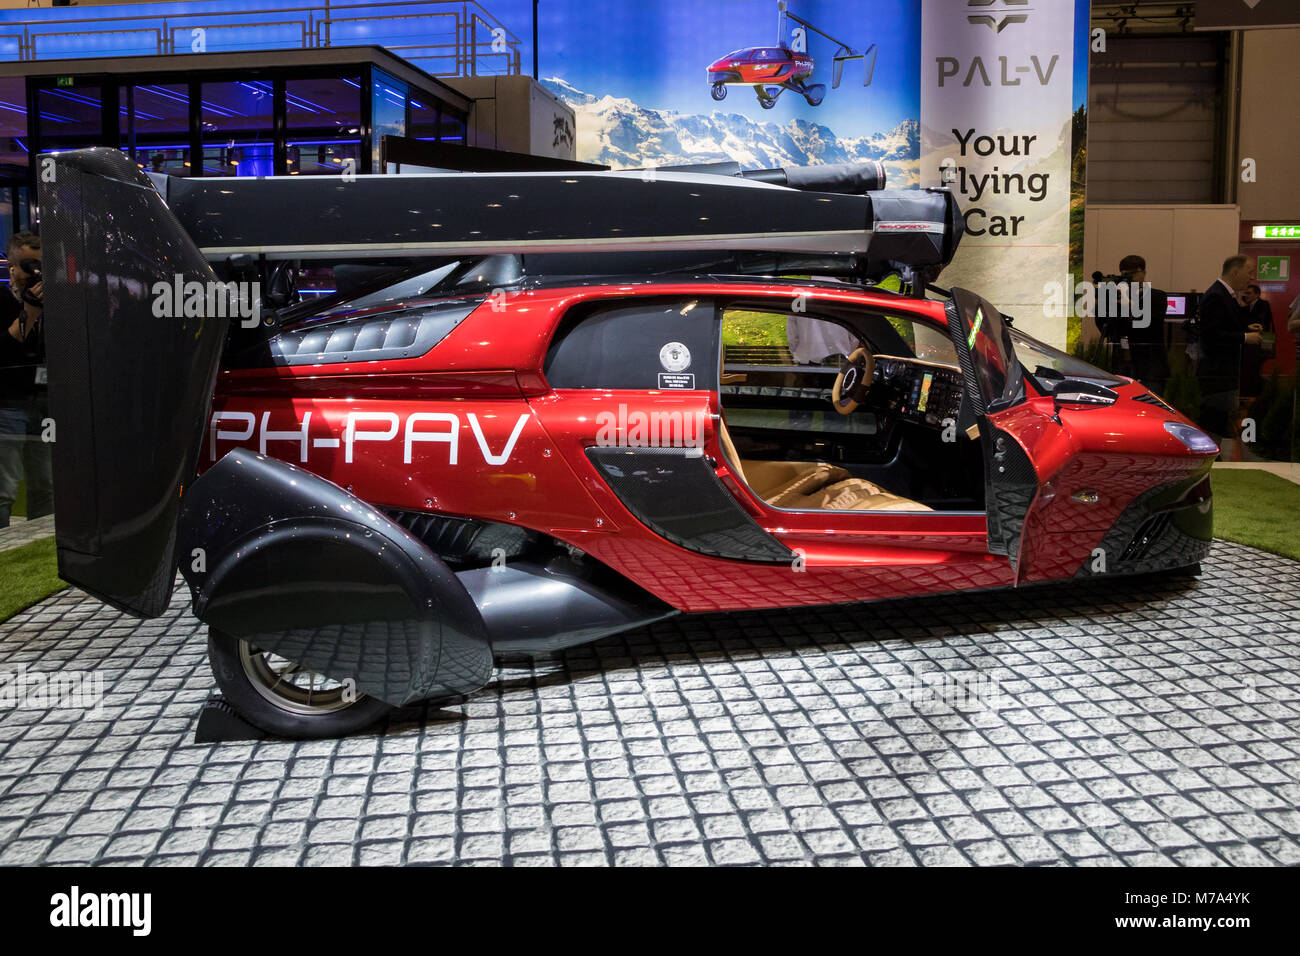 Genf, Schweiz - 6. MÄRZ 2018: Pal-V Liberty fliegendes Auto macht öffentlichen Debüt auf dem 88. Internationalen Automobilsalon in Genf. Pal-V ist, die Welt zu werden. Stockfoto